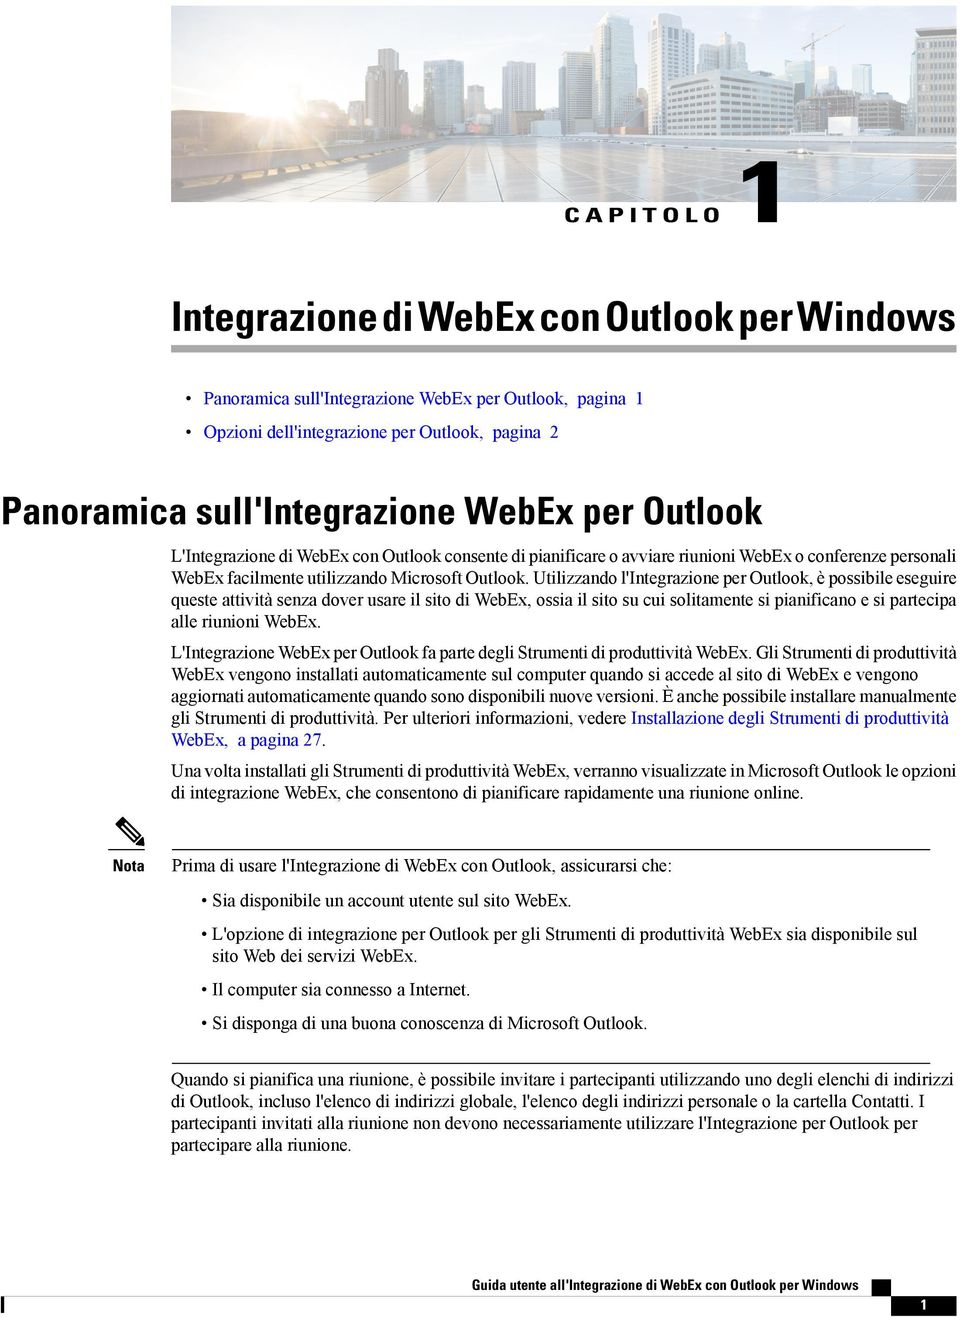 Utilizzando l'integrazione per Outlook, è possibile eseguire queste attività senza dover usare il sito di WebEx, ossia il sito su cui solitamente si pianificano e si partecipa alle riunioni WebEx.